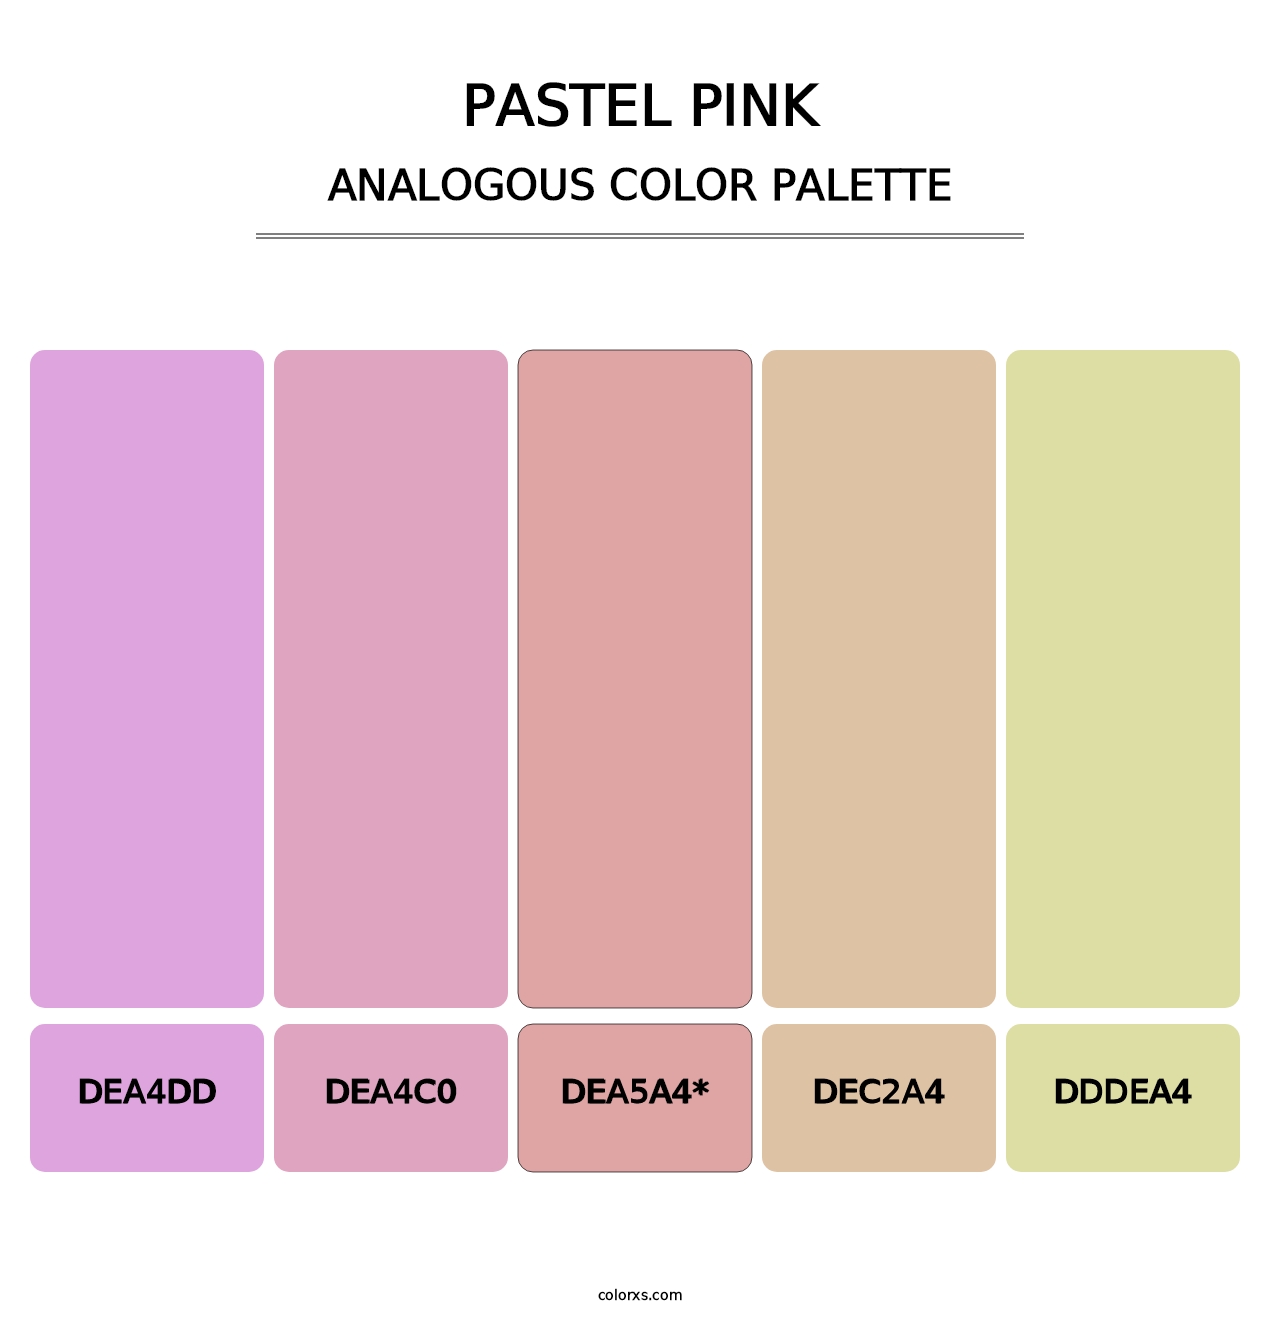 Pastel Pink - Analogous Color Palette